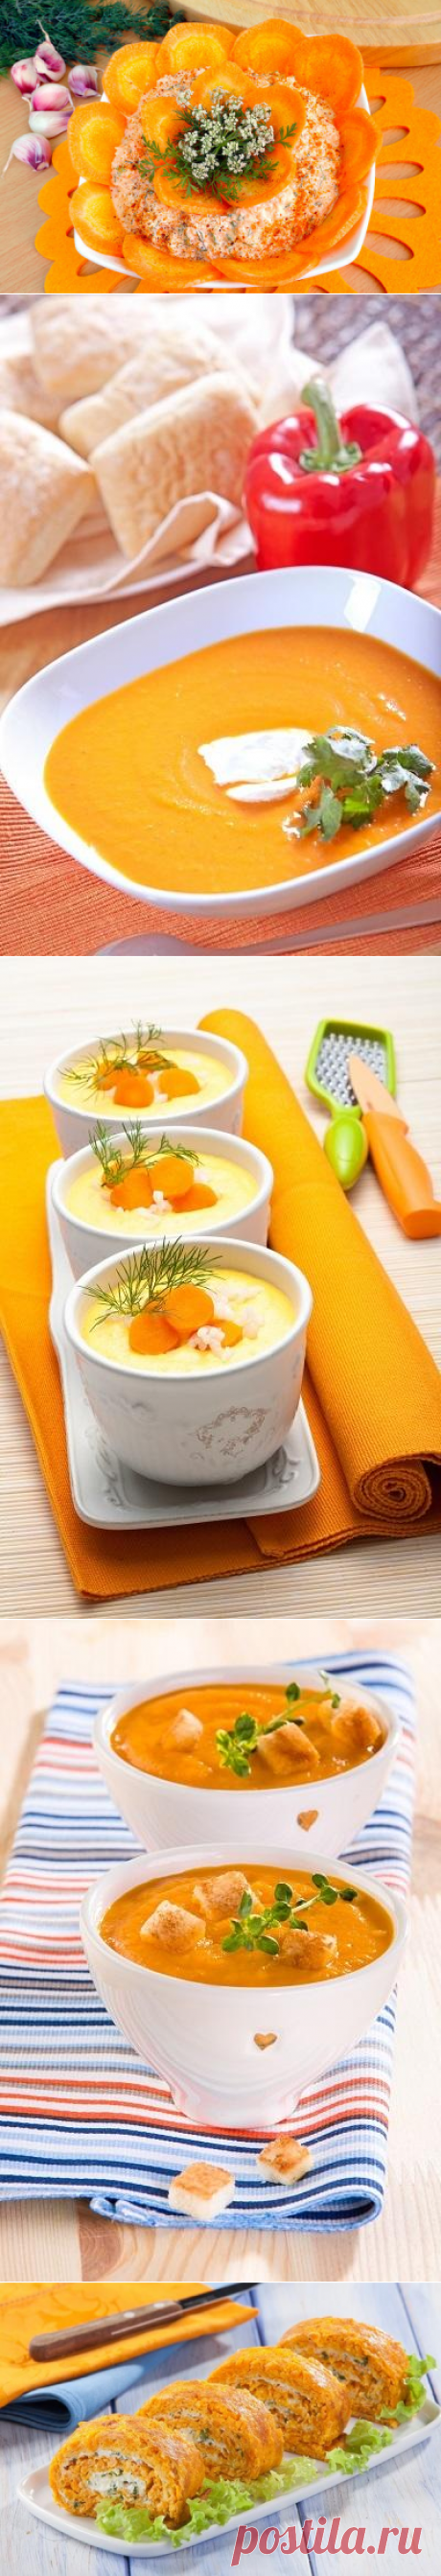 12 рецептов ярких и полезных блюд из моркови